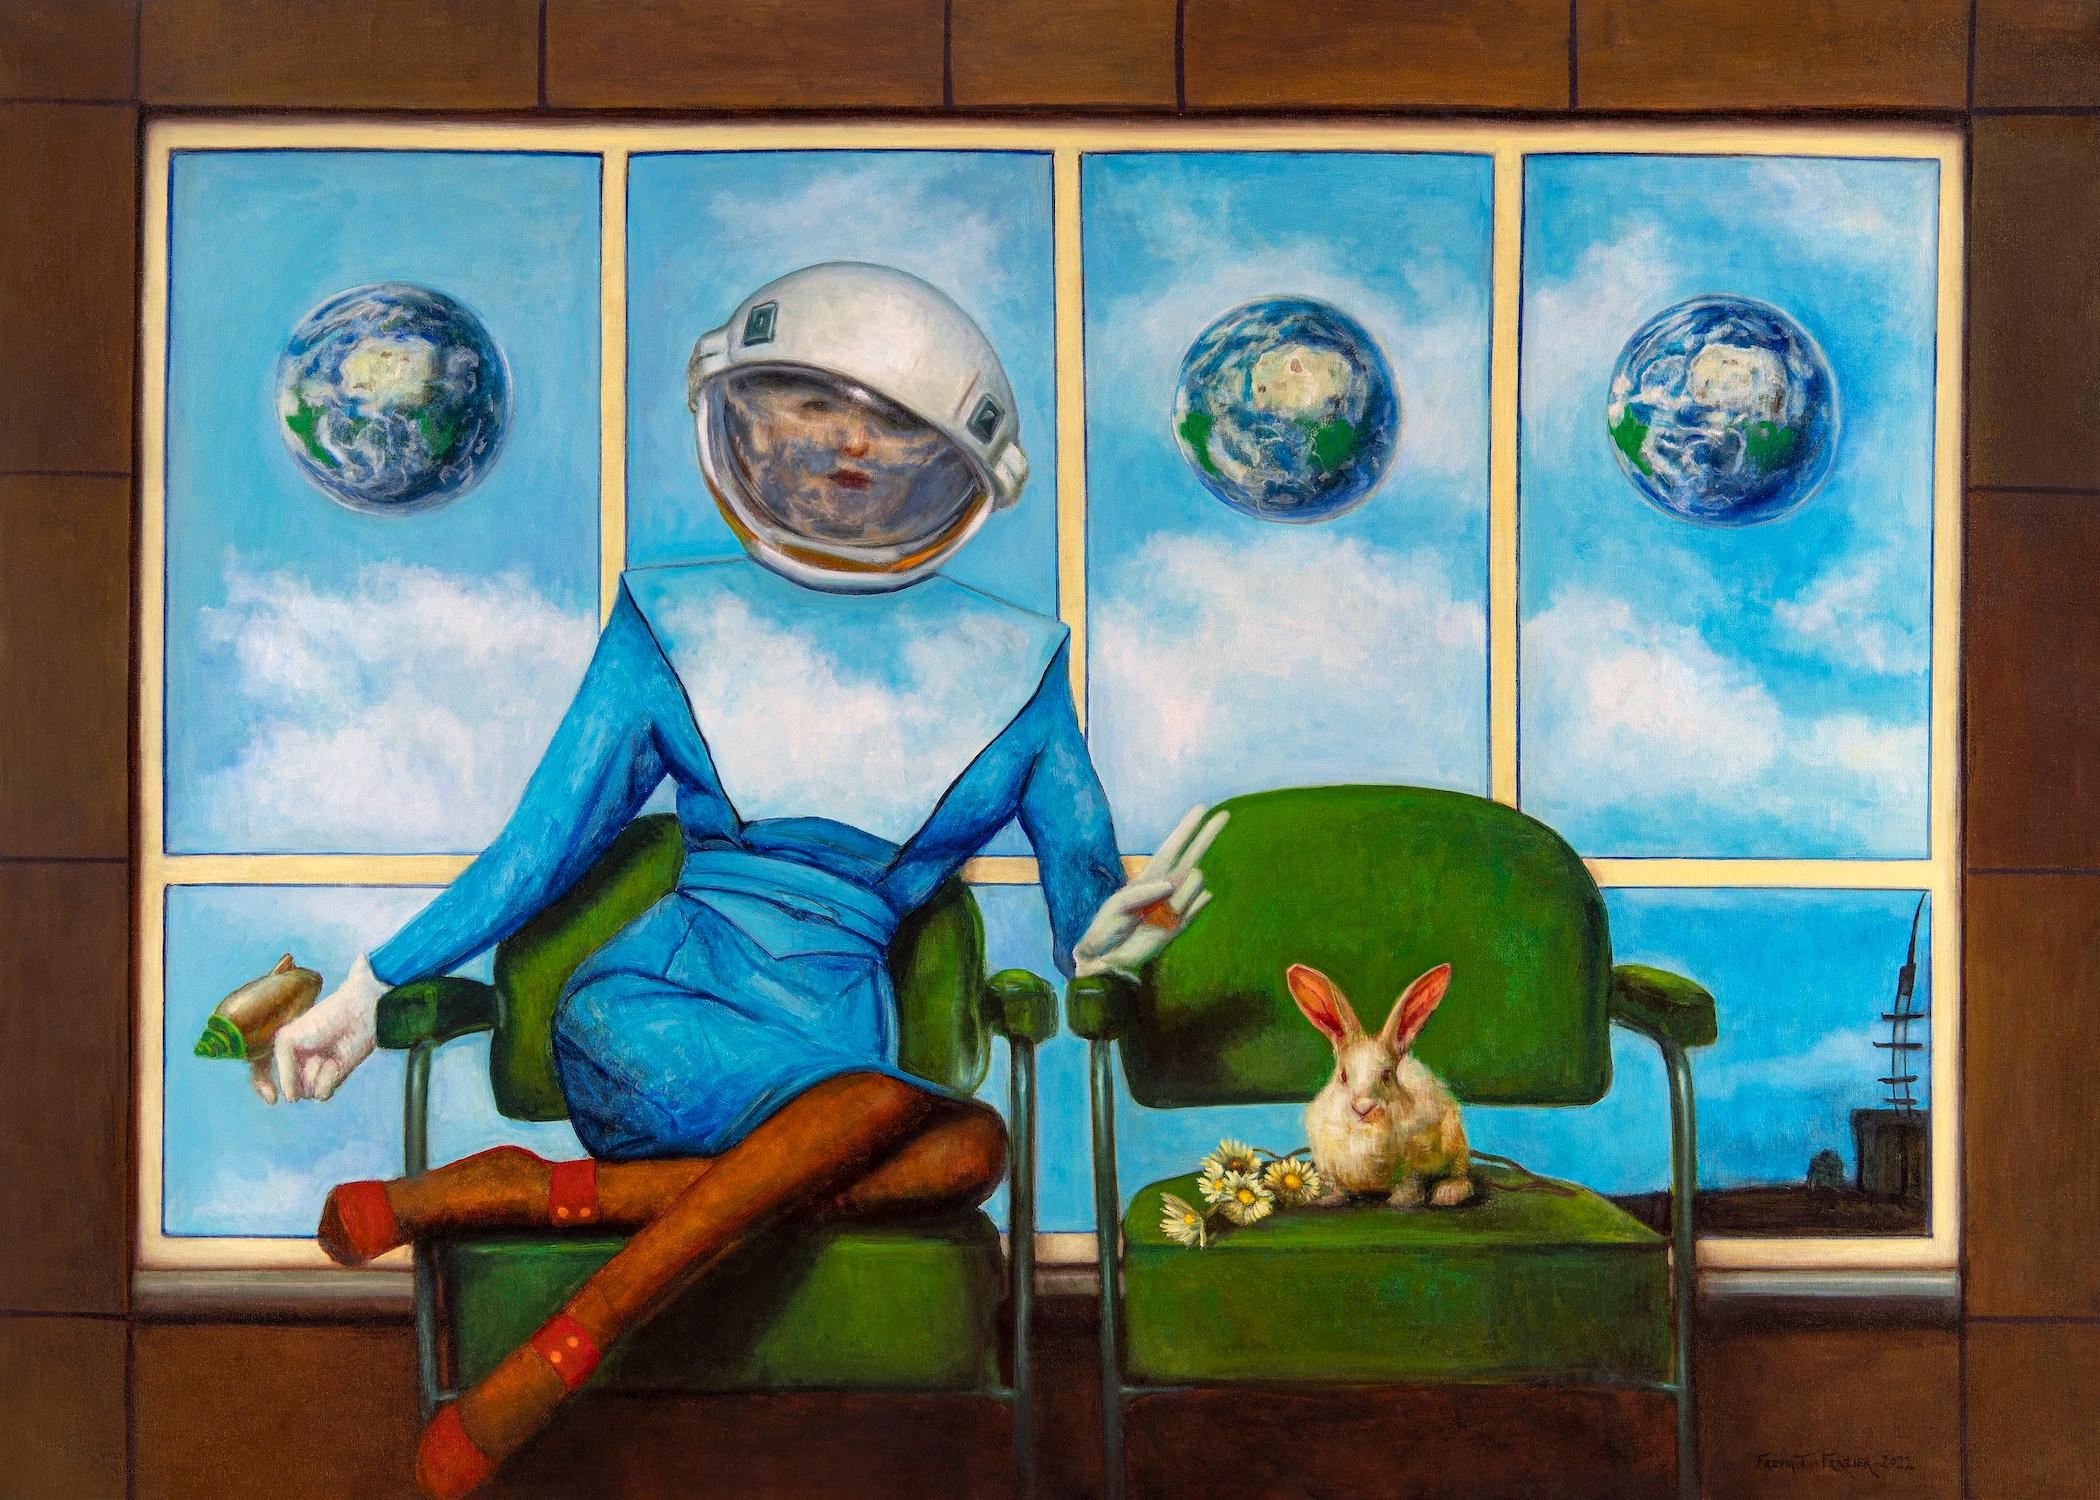 Come In Peace - Femme futuriste dans un costume spatiale assise à côté d'un lapin